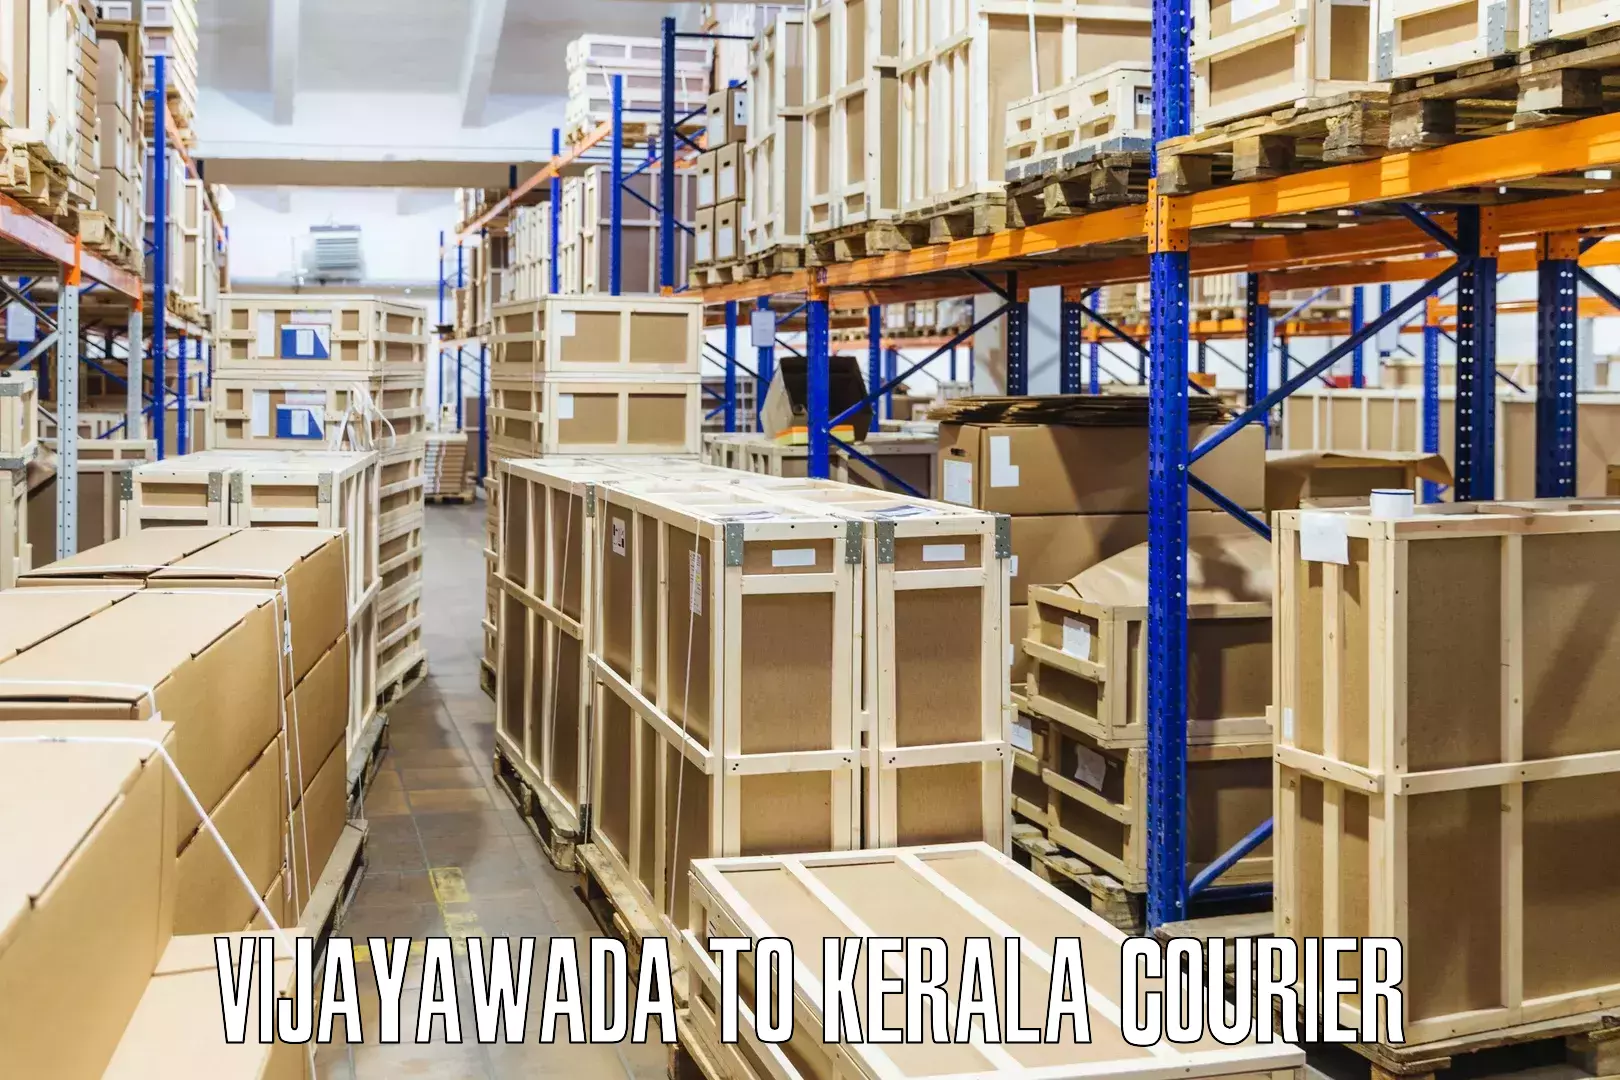 Efficient shipping operations Vijayawada to Chungathara